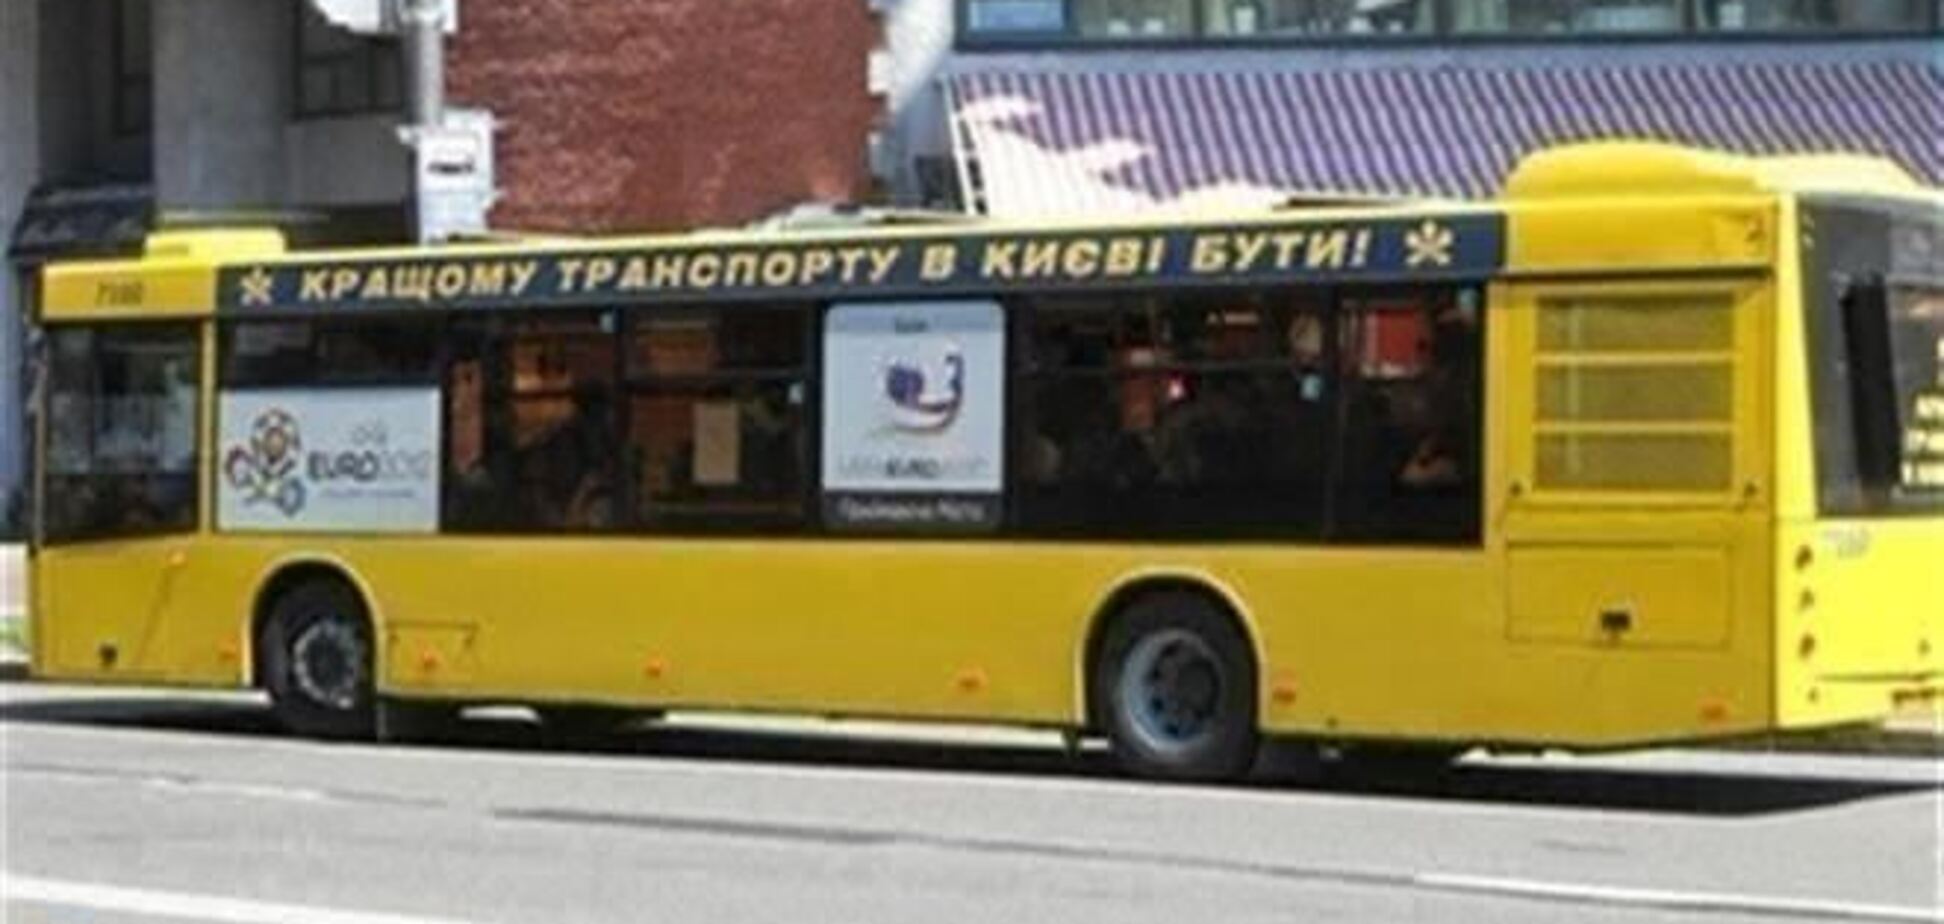 Проезд в киевском транспорте подорожает с 1 февраля - Голубченко